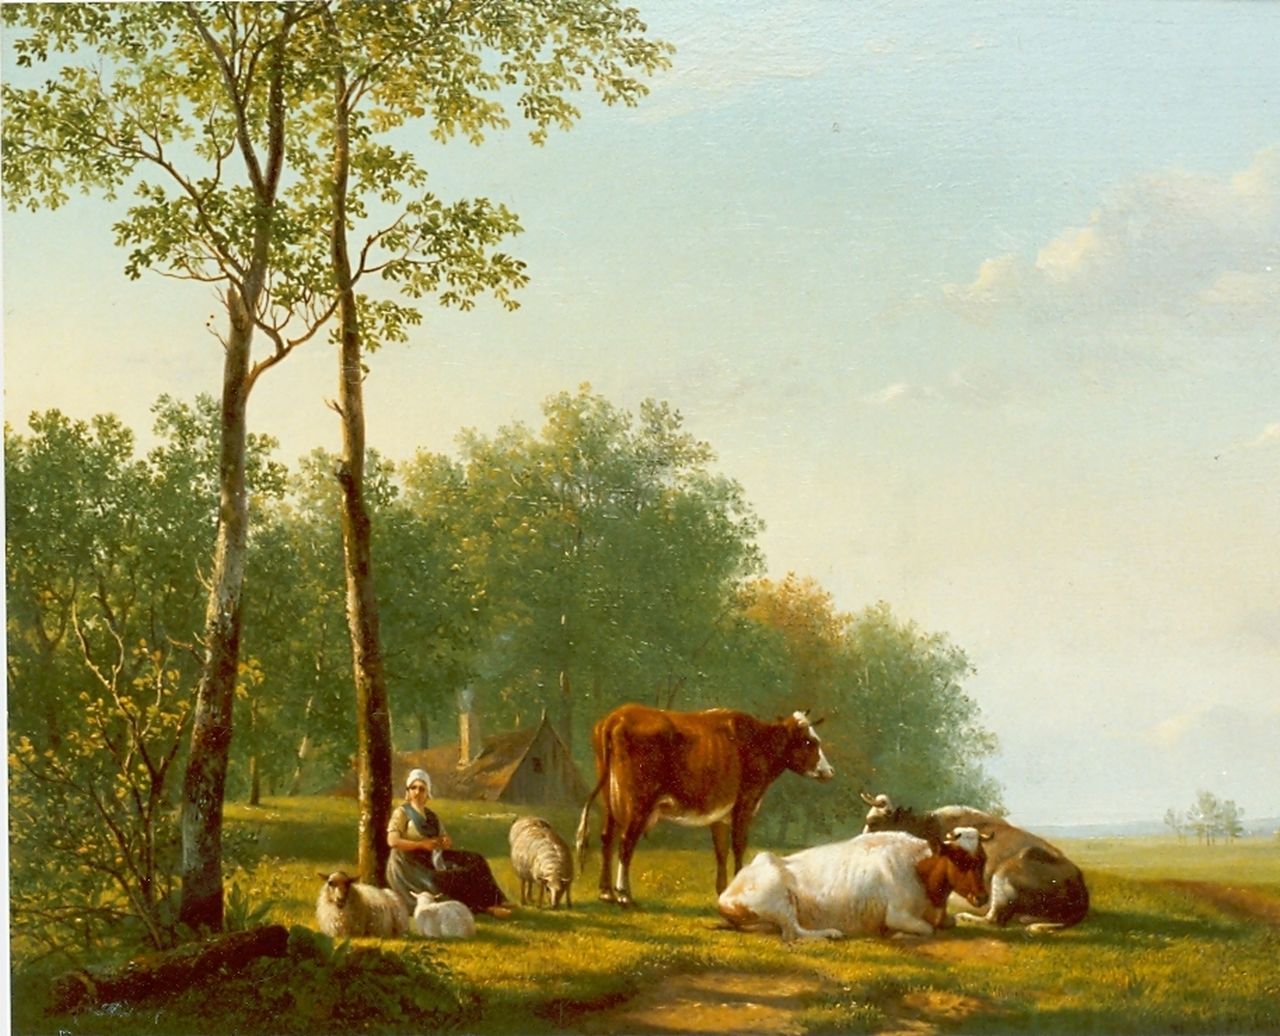 Sande Bakhuyzen H. van de | Hendrikus van de Sande Bakhuyzen, Peasant woman with cattle in a landscape, oil on panel